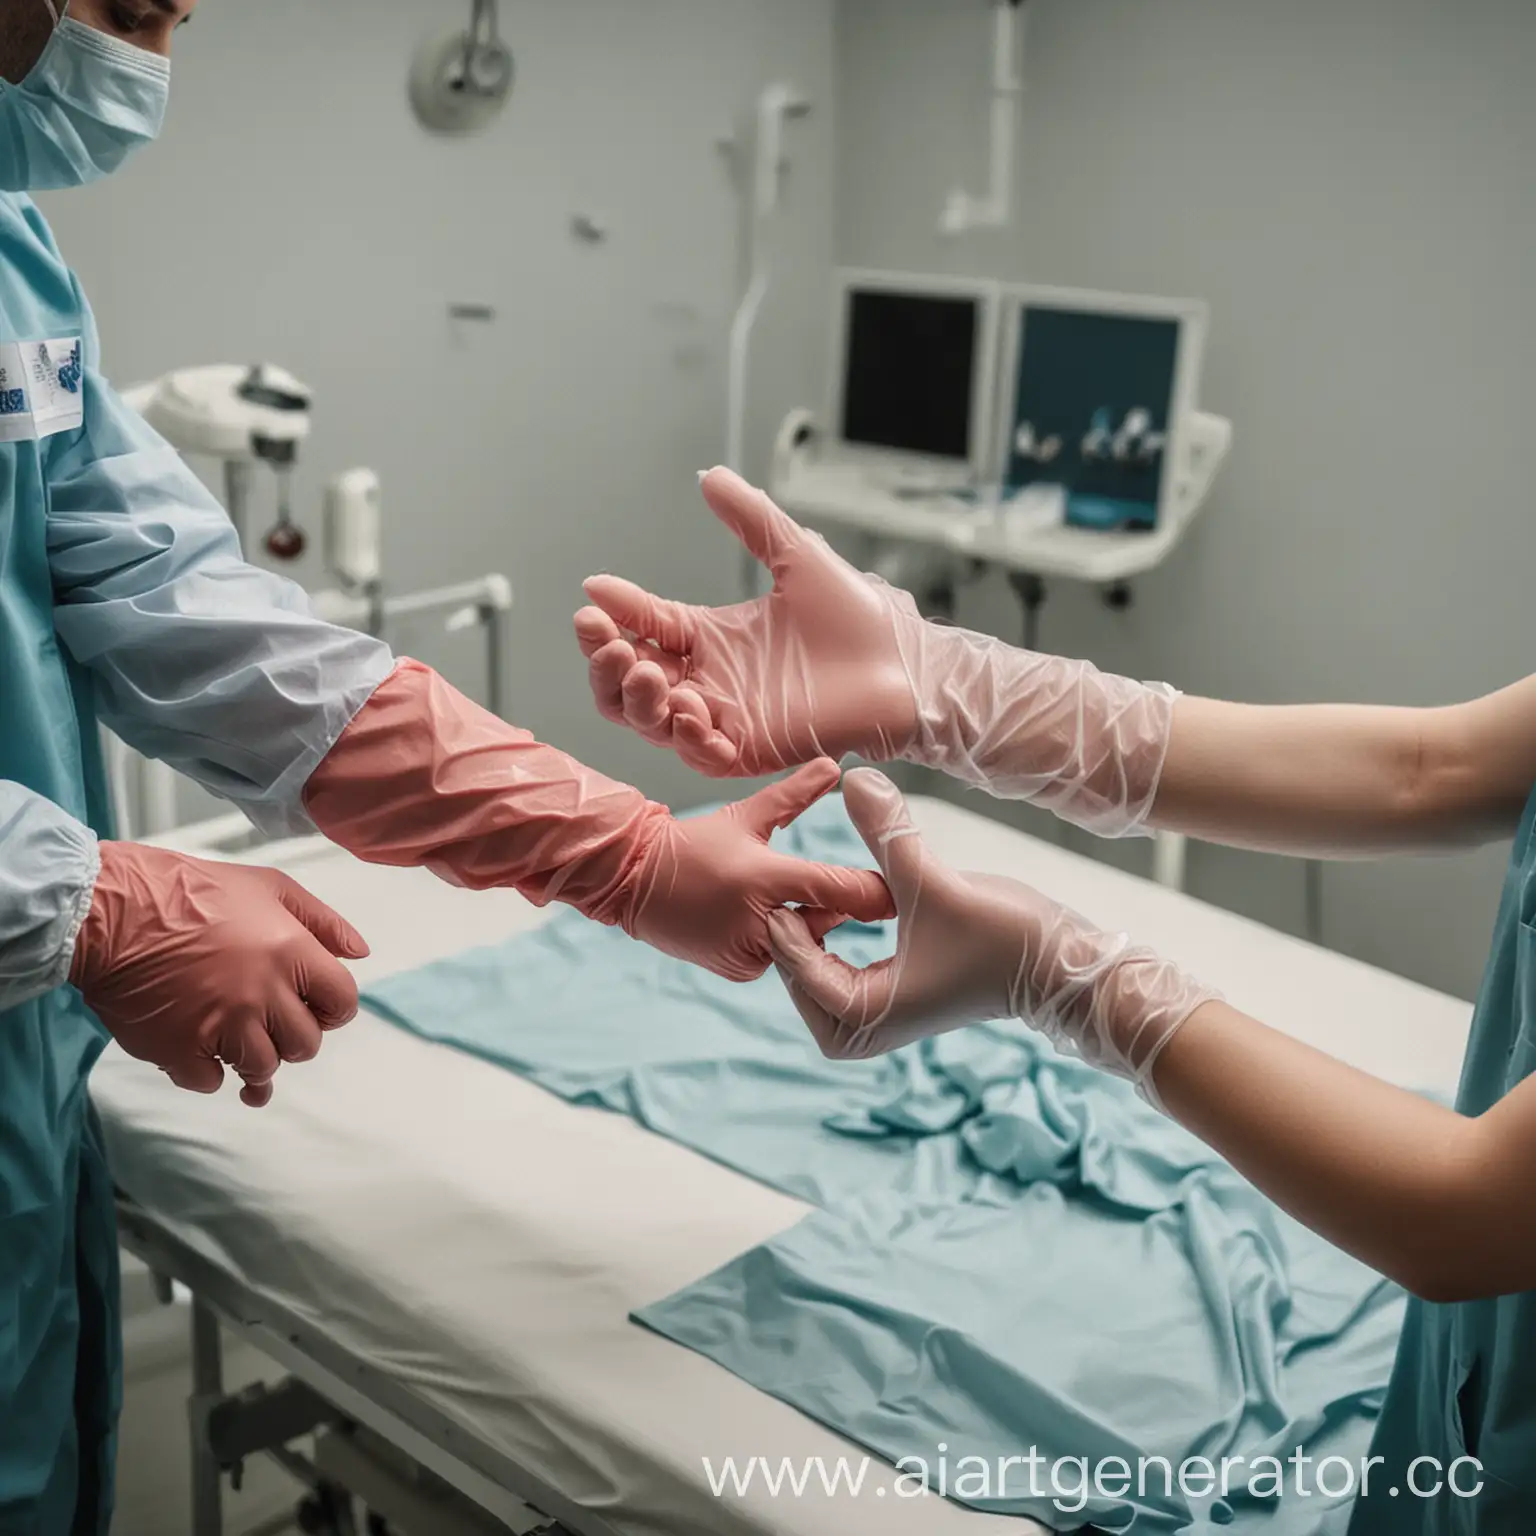 Охрана труда в больнице, врач надевает перчатки перед операцией с помощью ассистента 